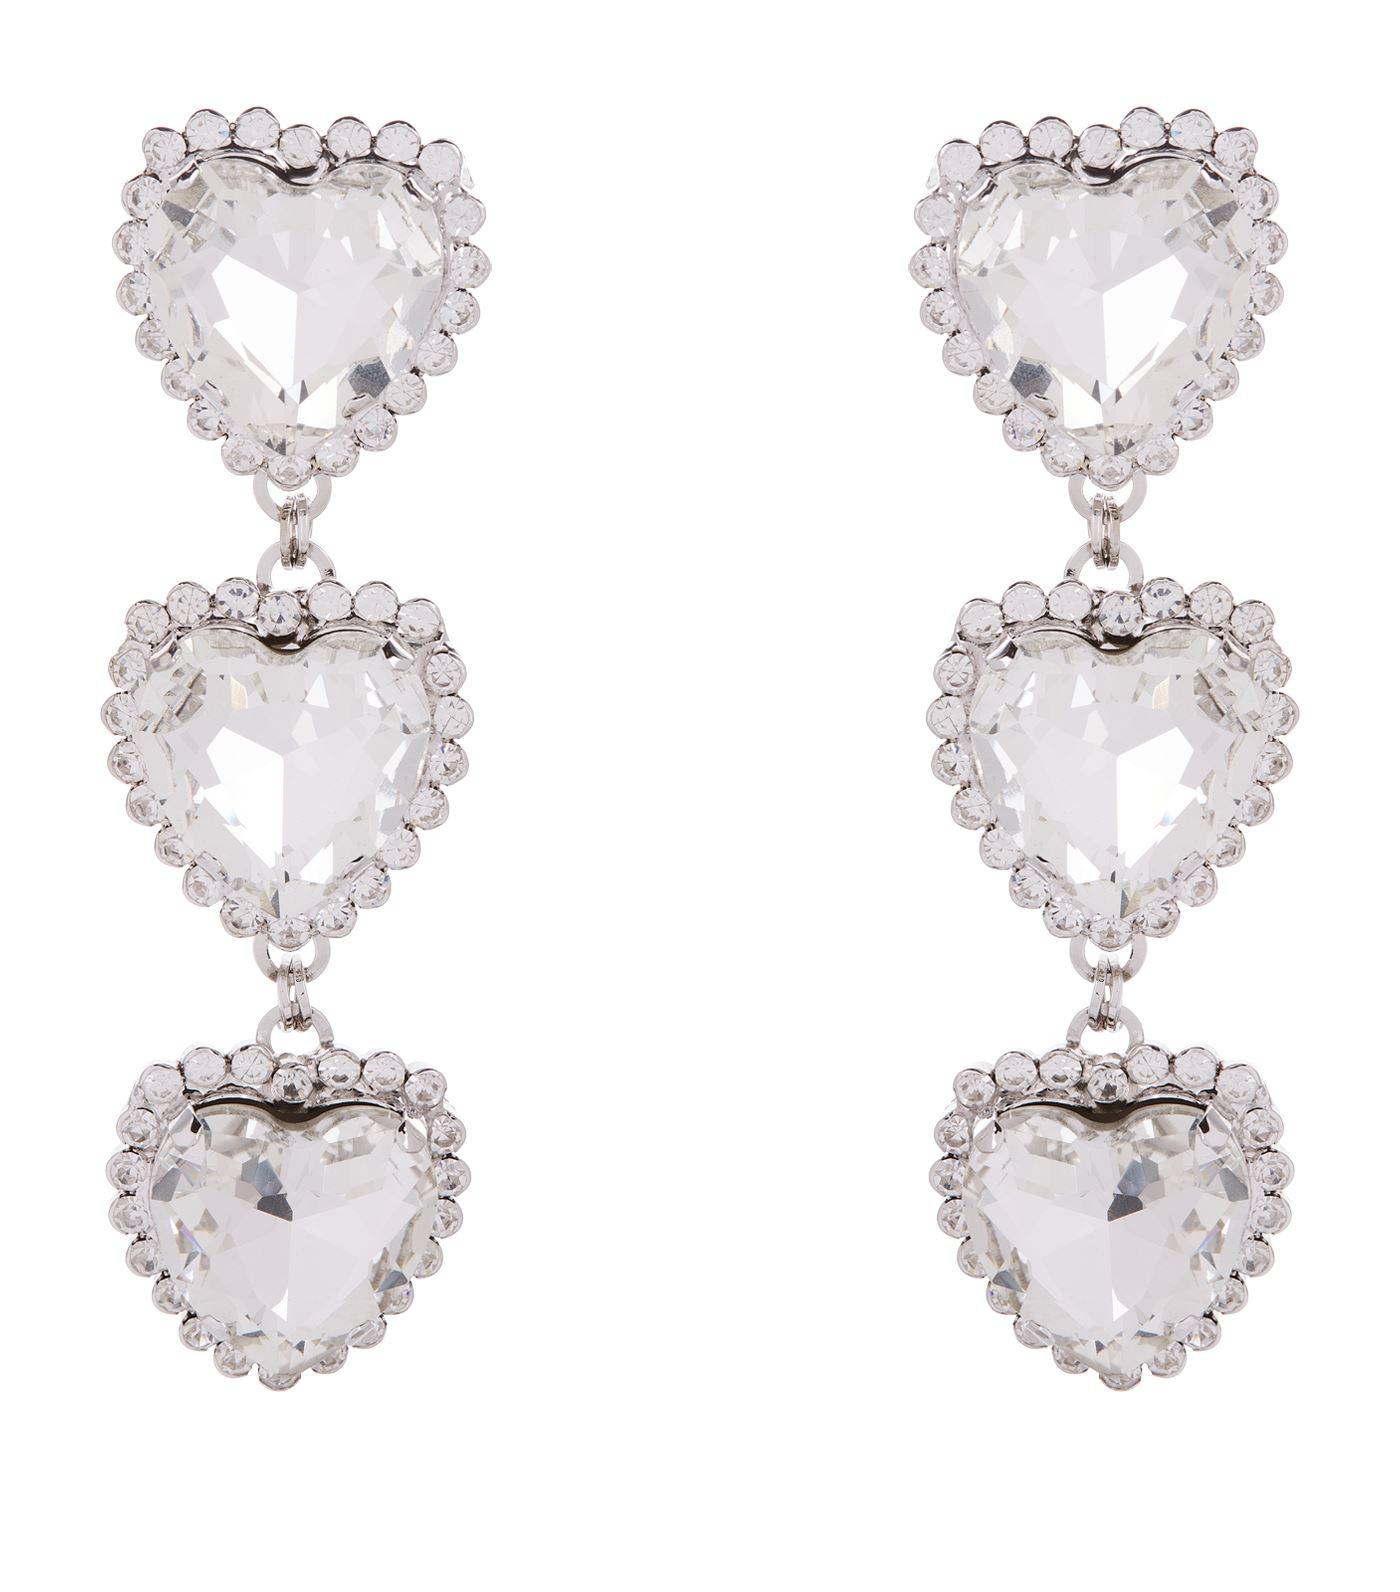 Alessandra Rich Heart Crystal Three Tier Drop Earrings in Silver